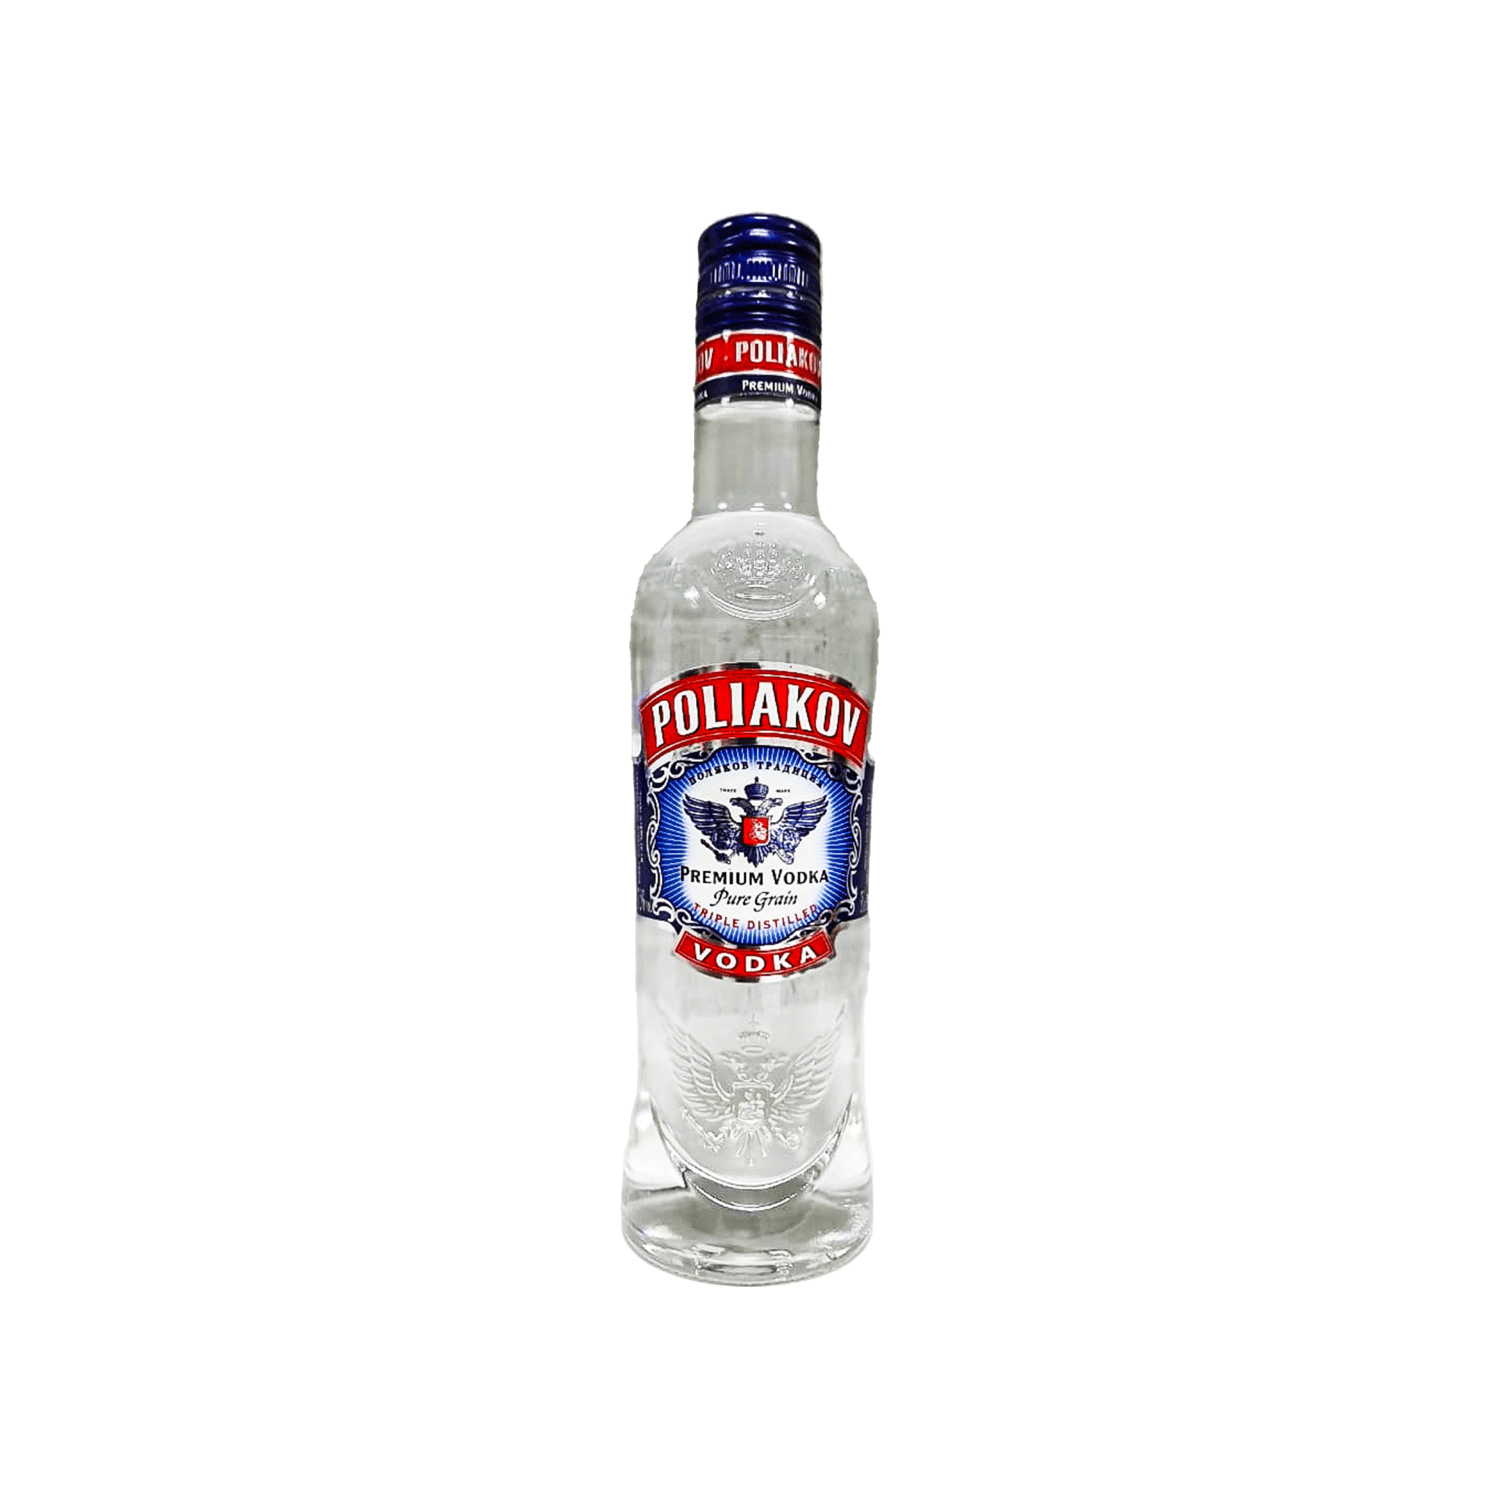 Poliakov Vodka 450cl – Cask & Barrel